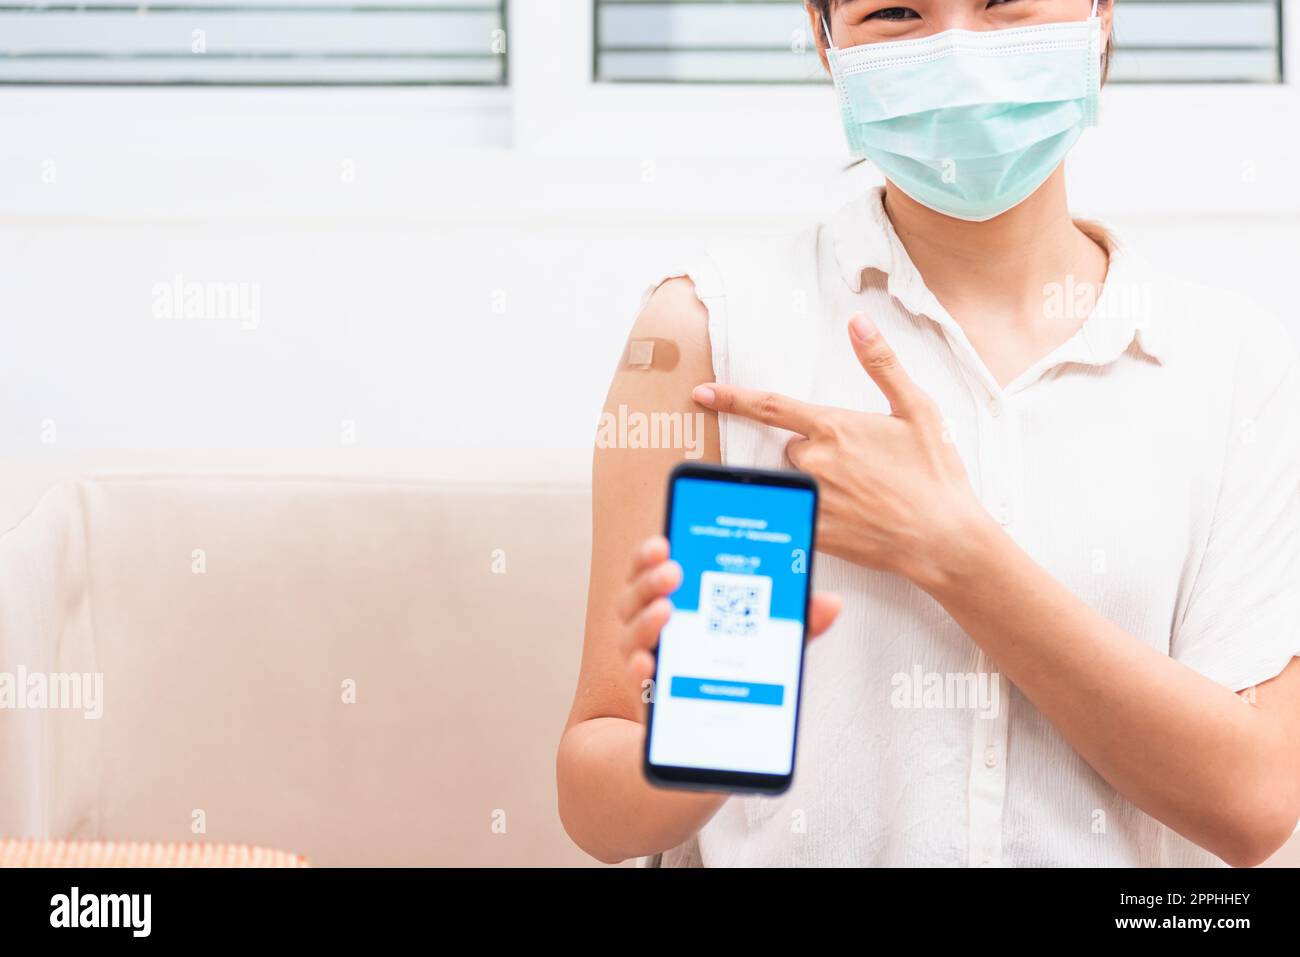 femme montrant du plâtre adhésif sur le bras elle a vacciné et montrant l'application smartphone écran numérique mobile vacciné Banque D'Images